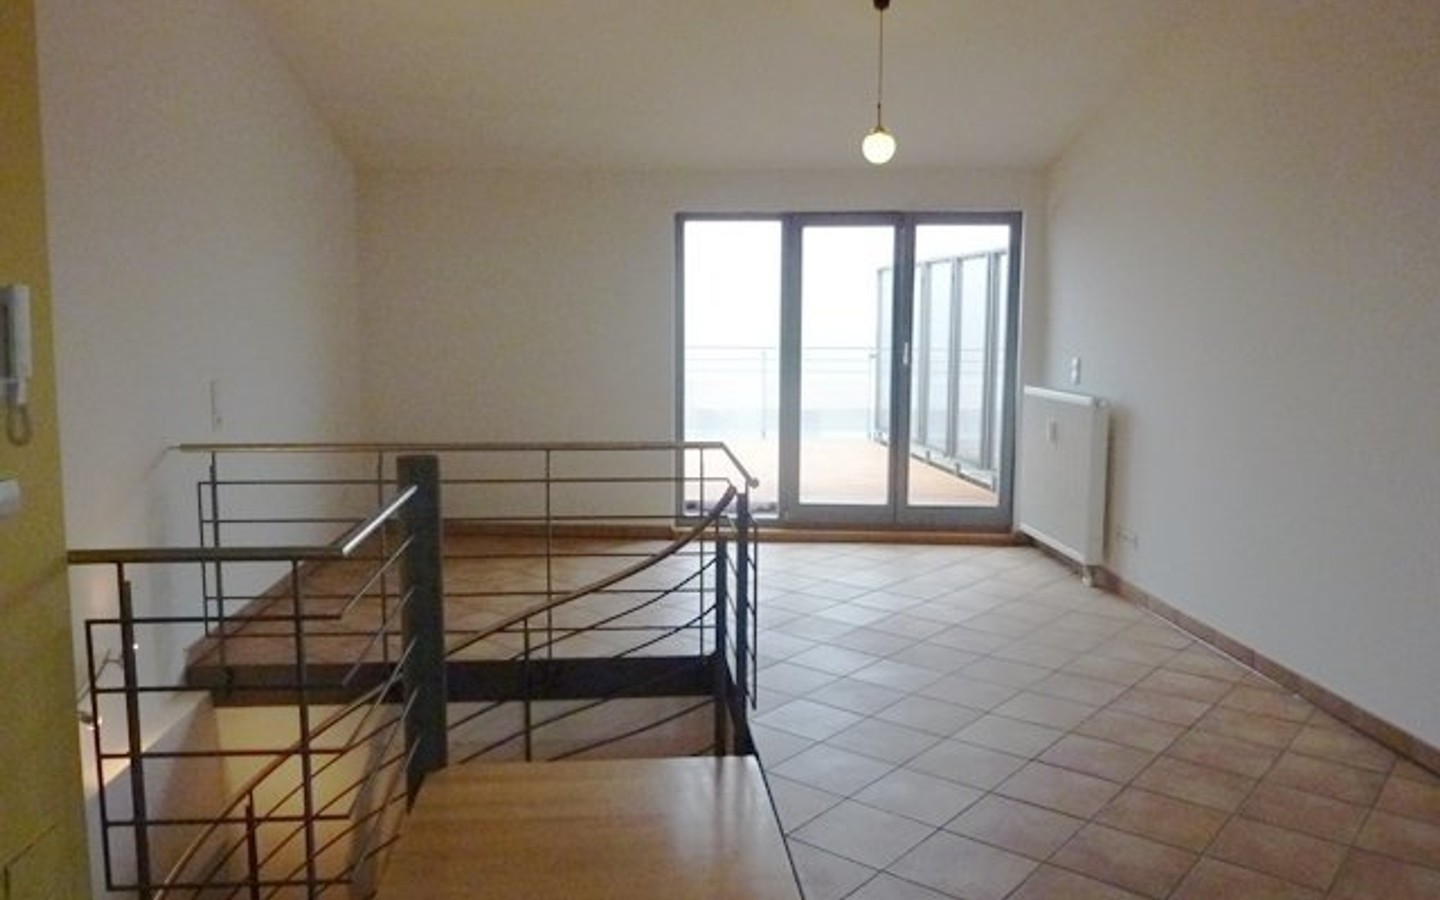 Wohnbereich - Charmates Kleinod in HD - Handschuhsheim: moderne 2 Zimmermaisonettwohnung mit großer Dachterrasse